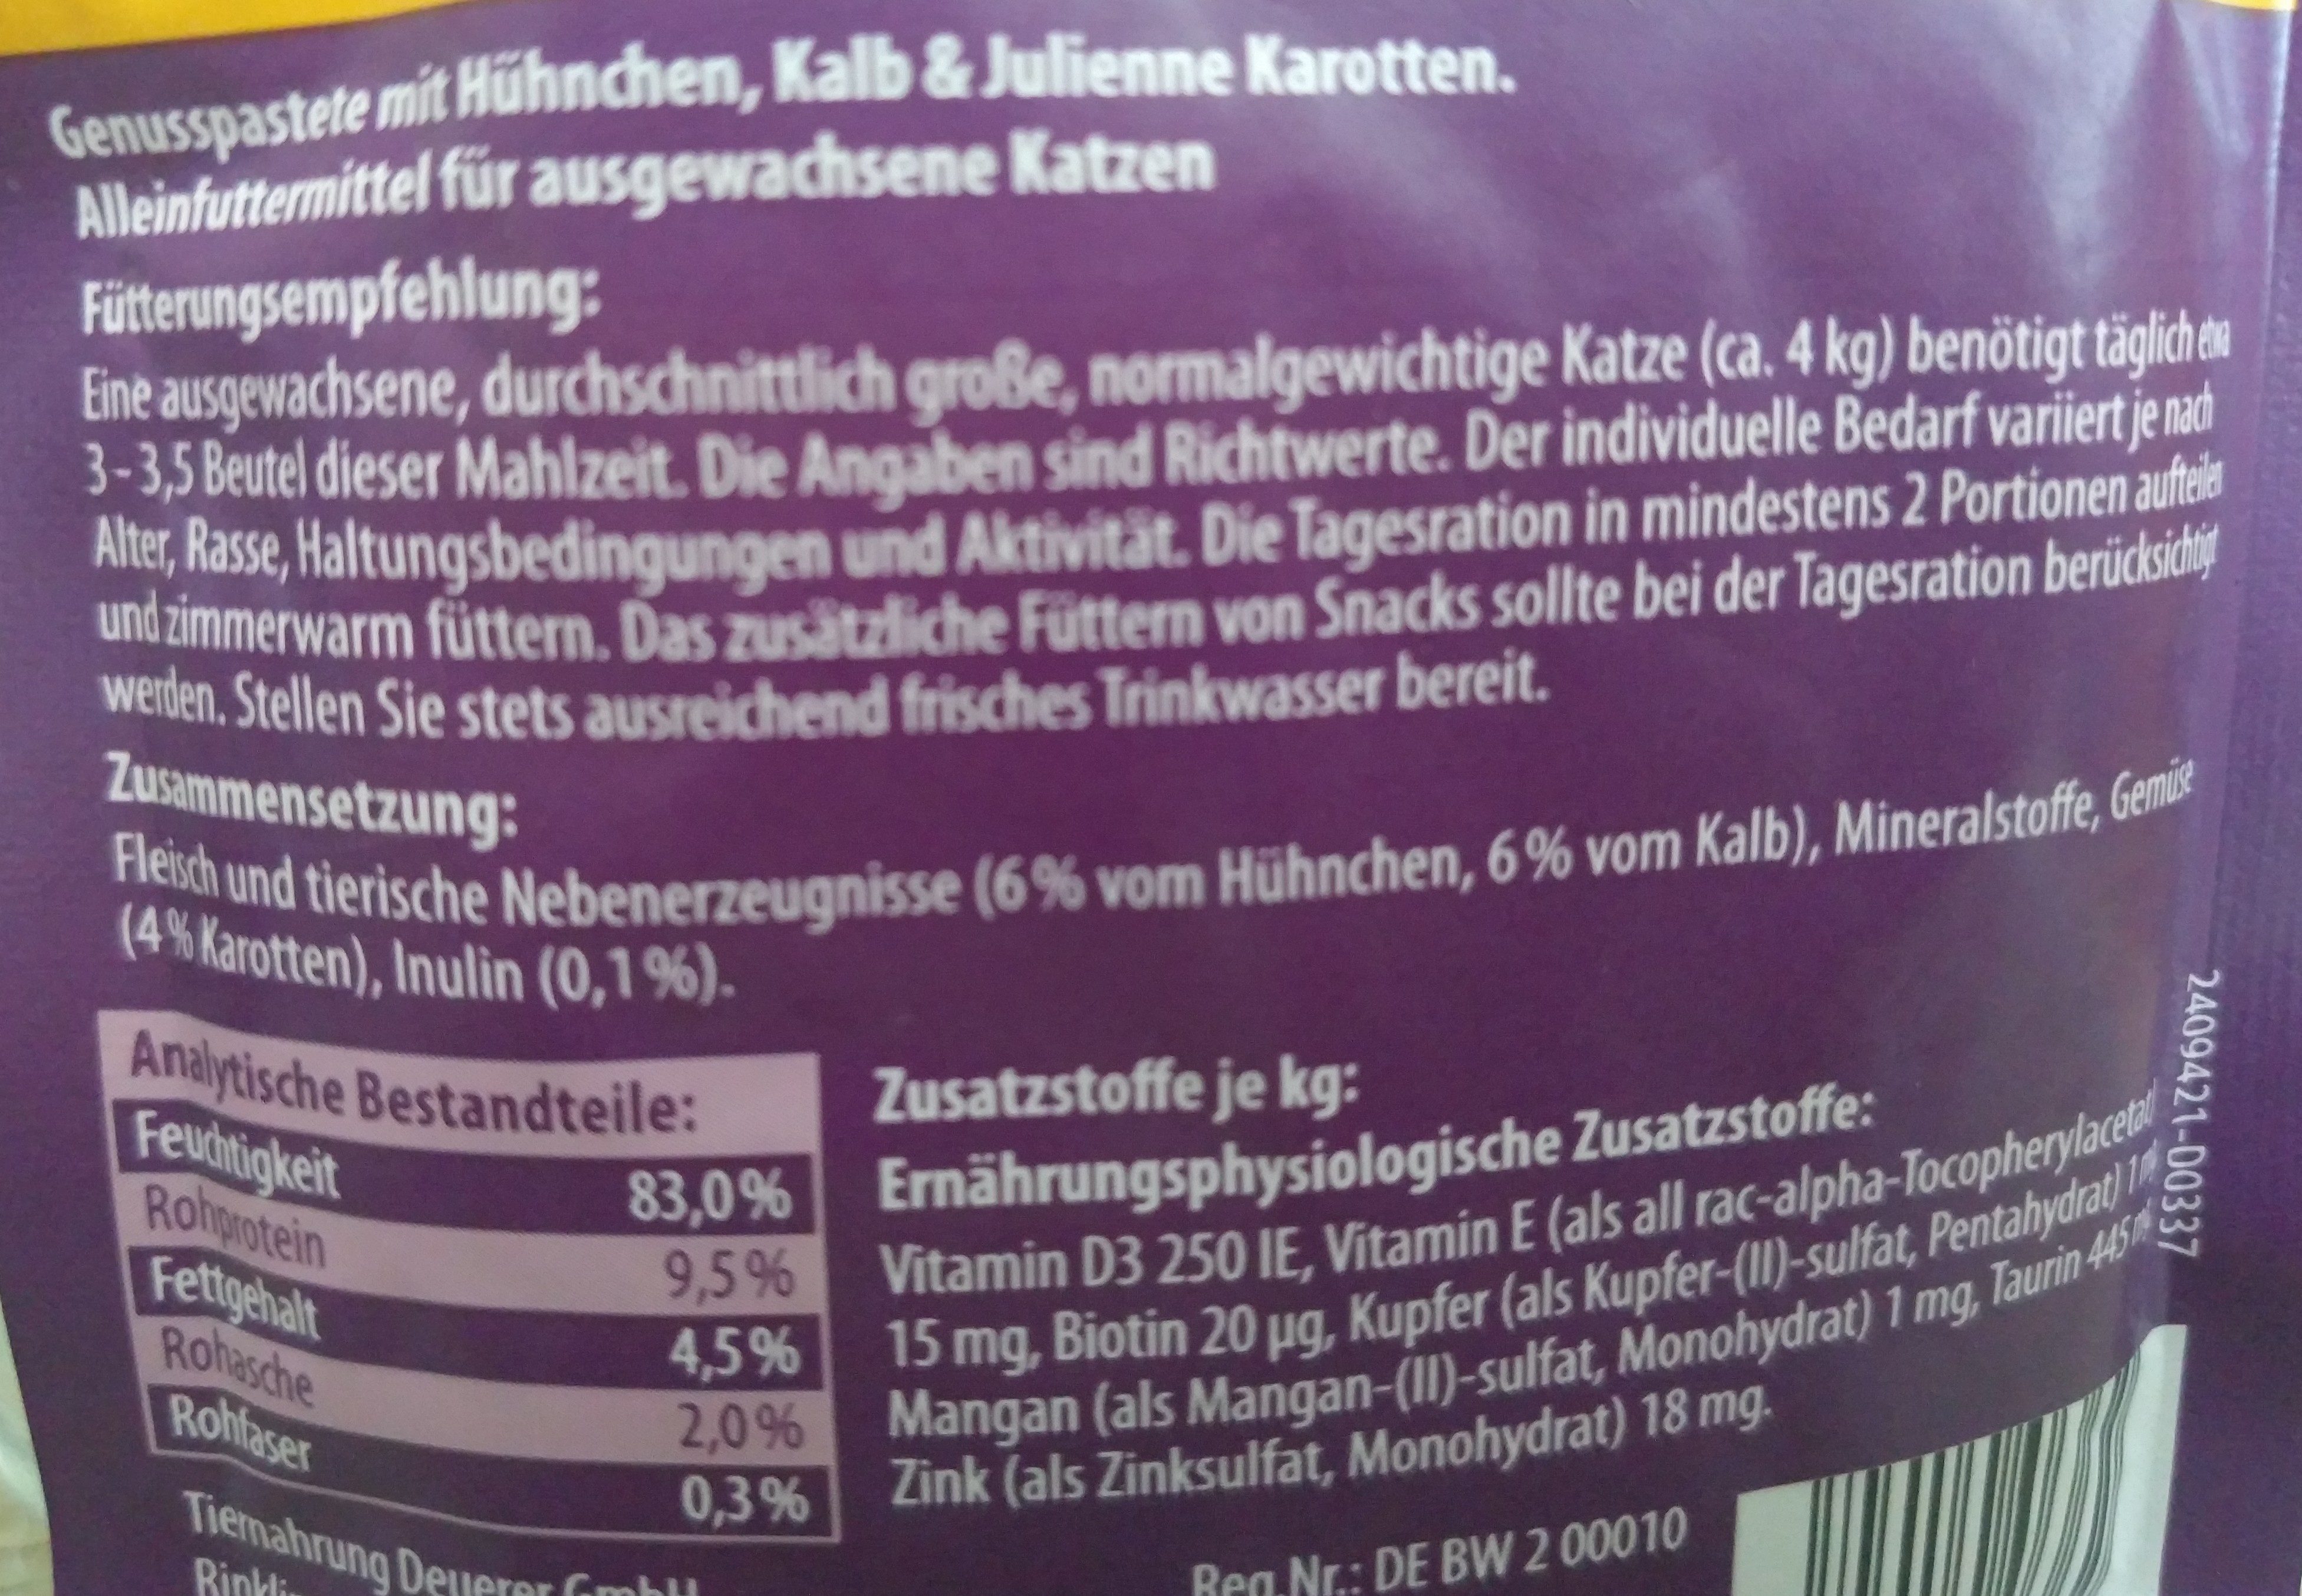 Genusspastete mit Hühnchen, Kalb & Julienne Karotten - Ingredients - de